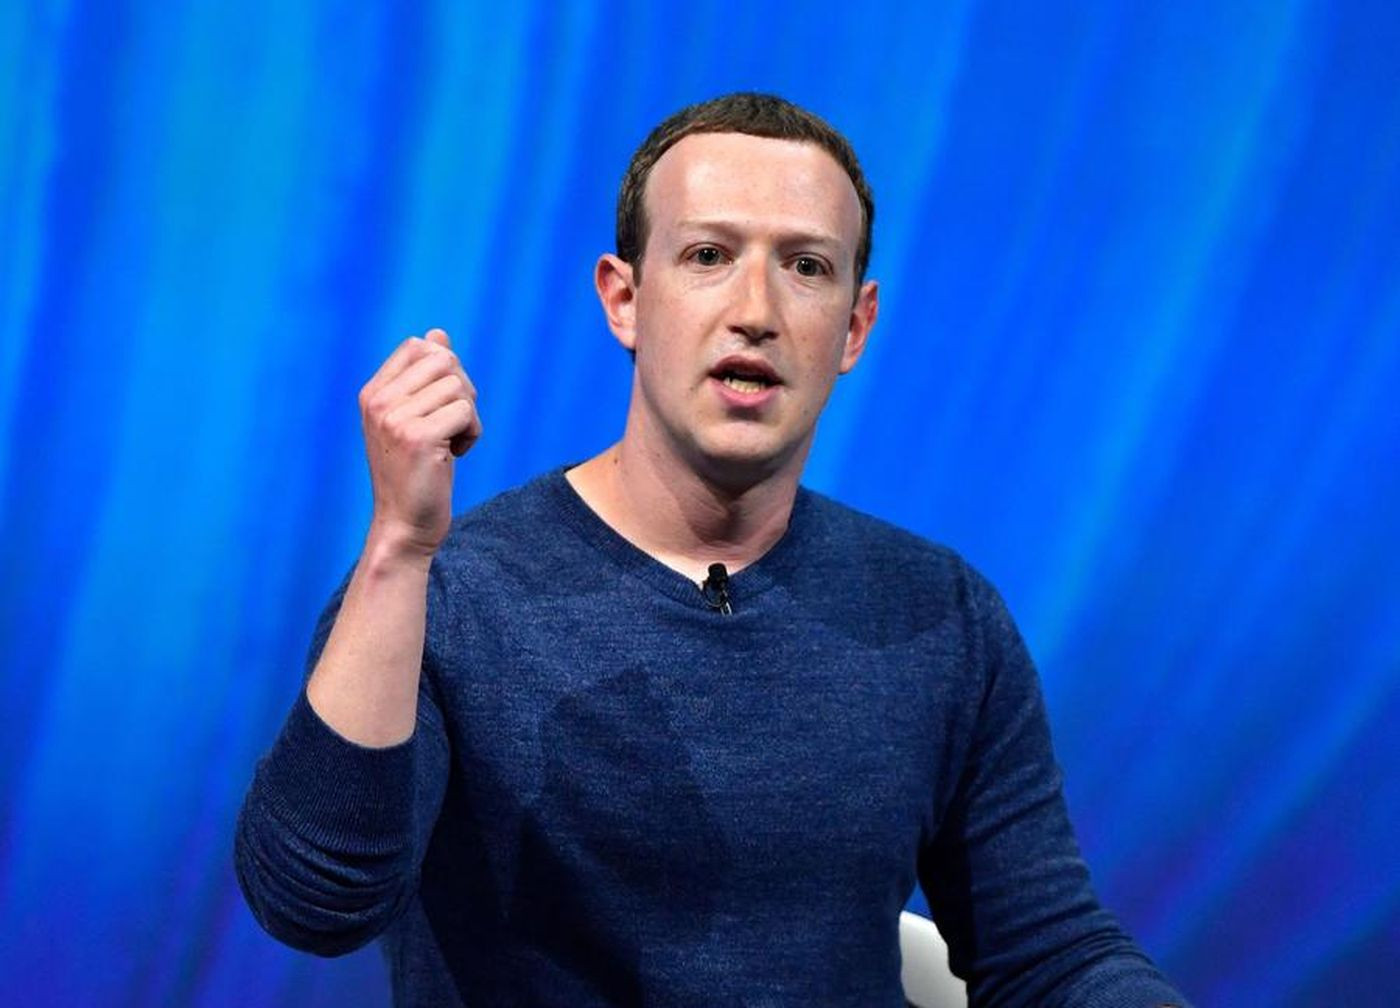 फेसबुक प्रमुख जुकरबर्गको सुरक्षामा बर्सेनि ८३ करोडभन्दा बढी खर्च